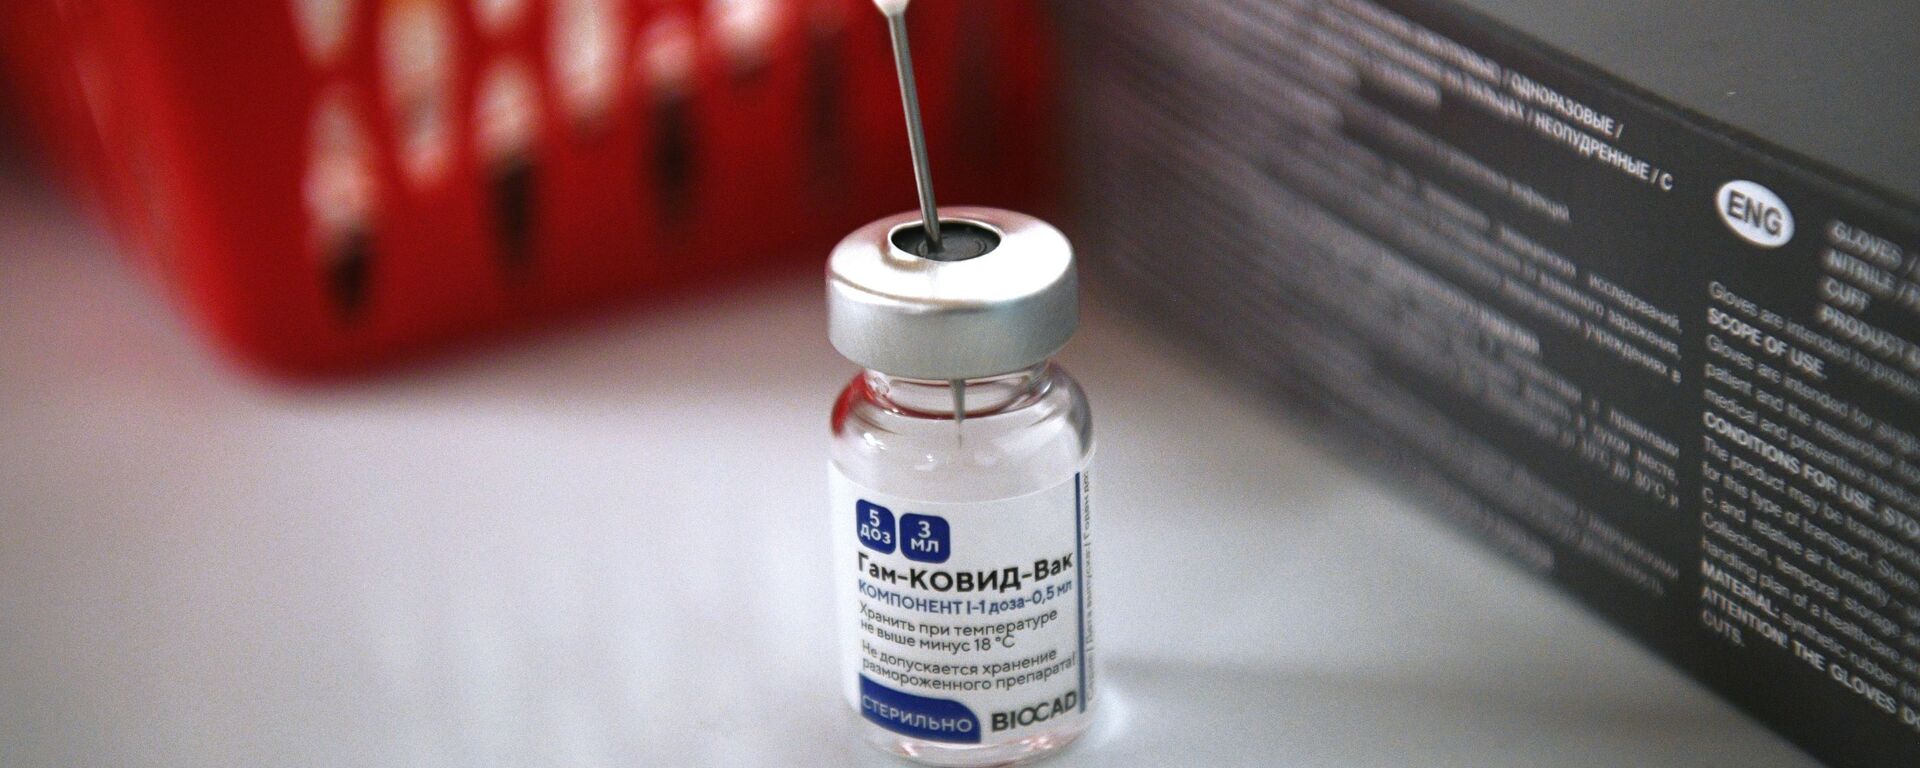 Vacuna rusa contra coronavirus Sputnik V - Sputnik Mundo, 1920, 04.09.2021